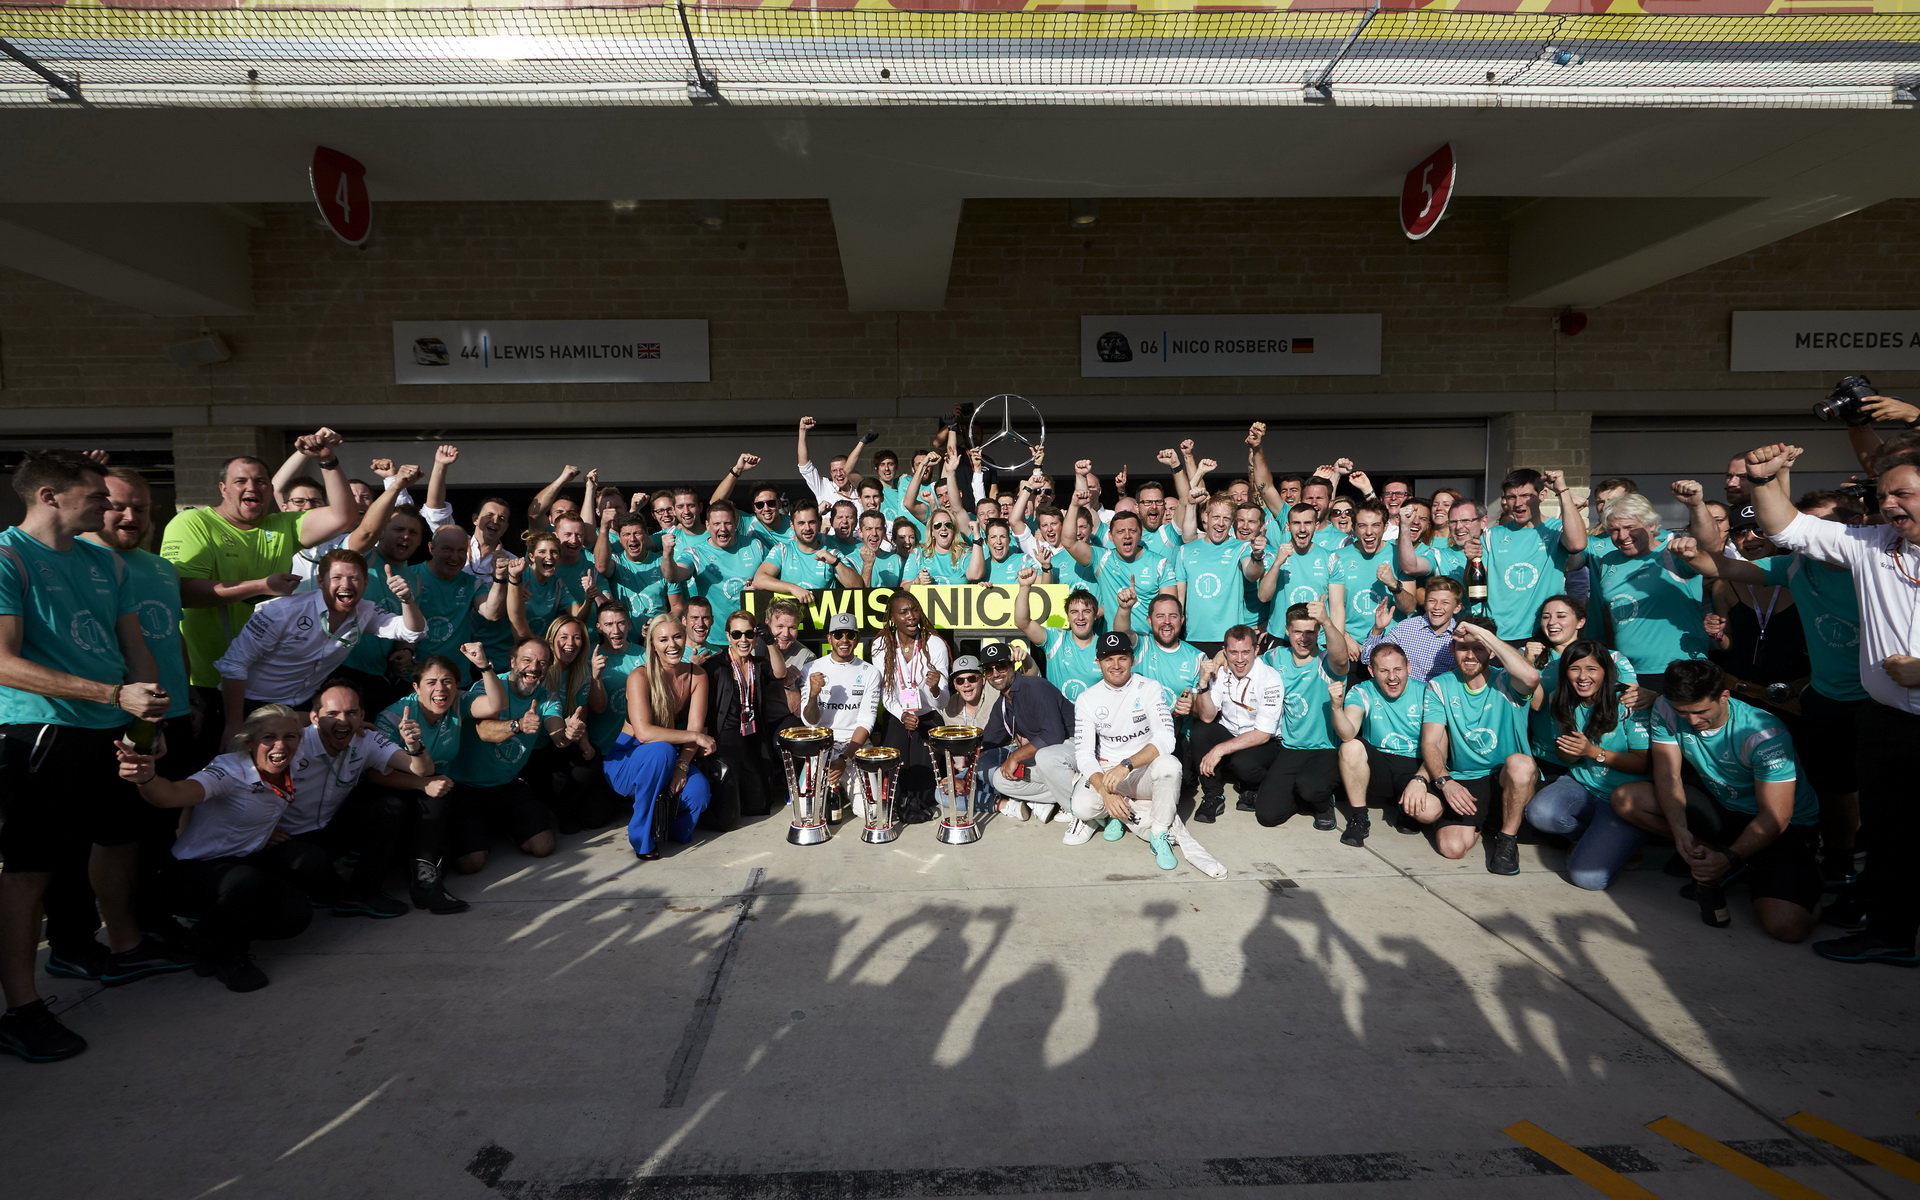 Hromadná fotografie radujícího se týmu Mercedes závodě v Austinu